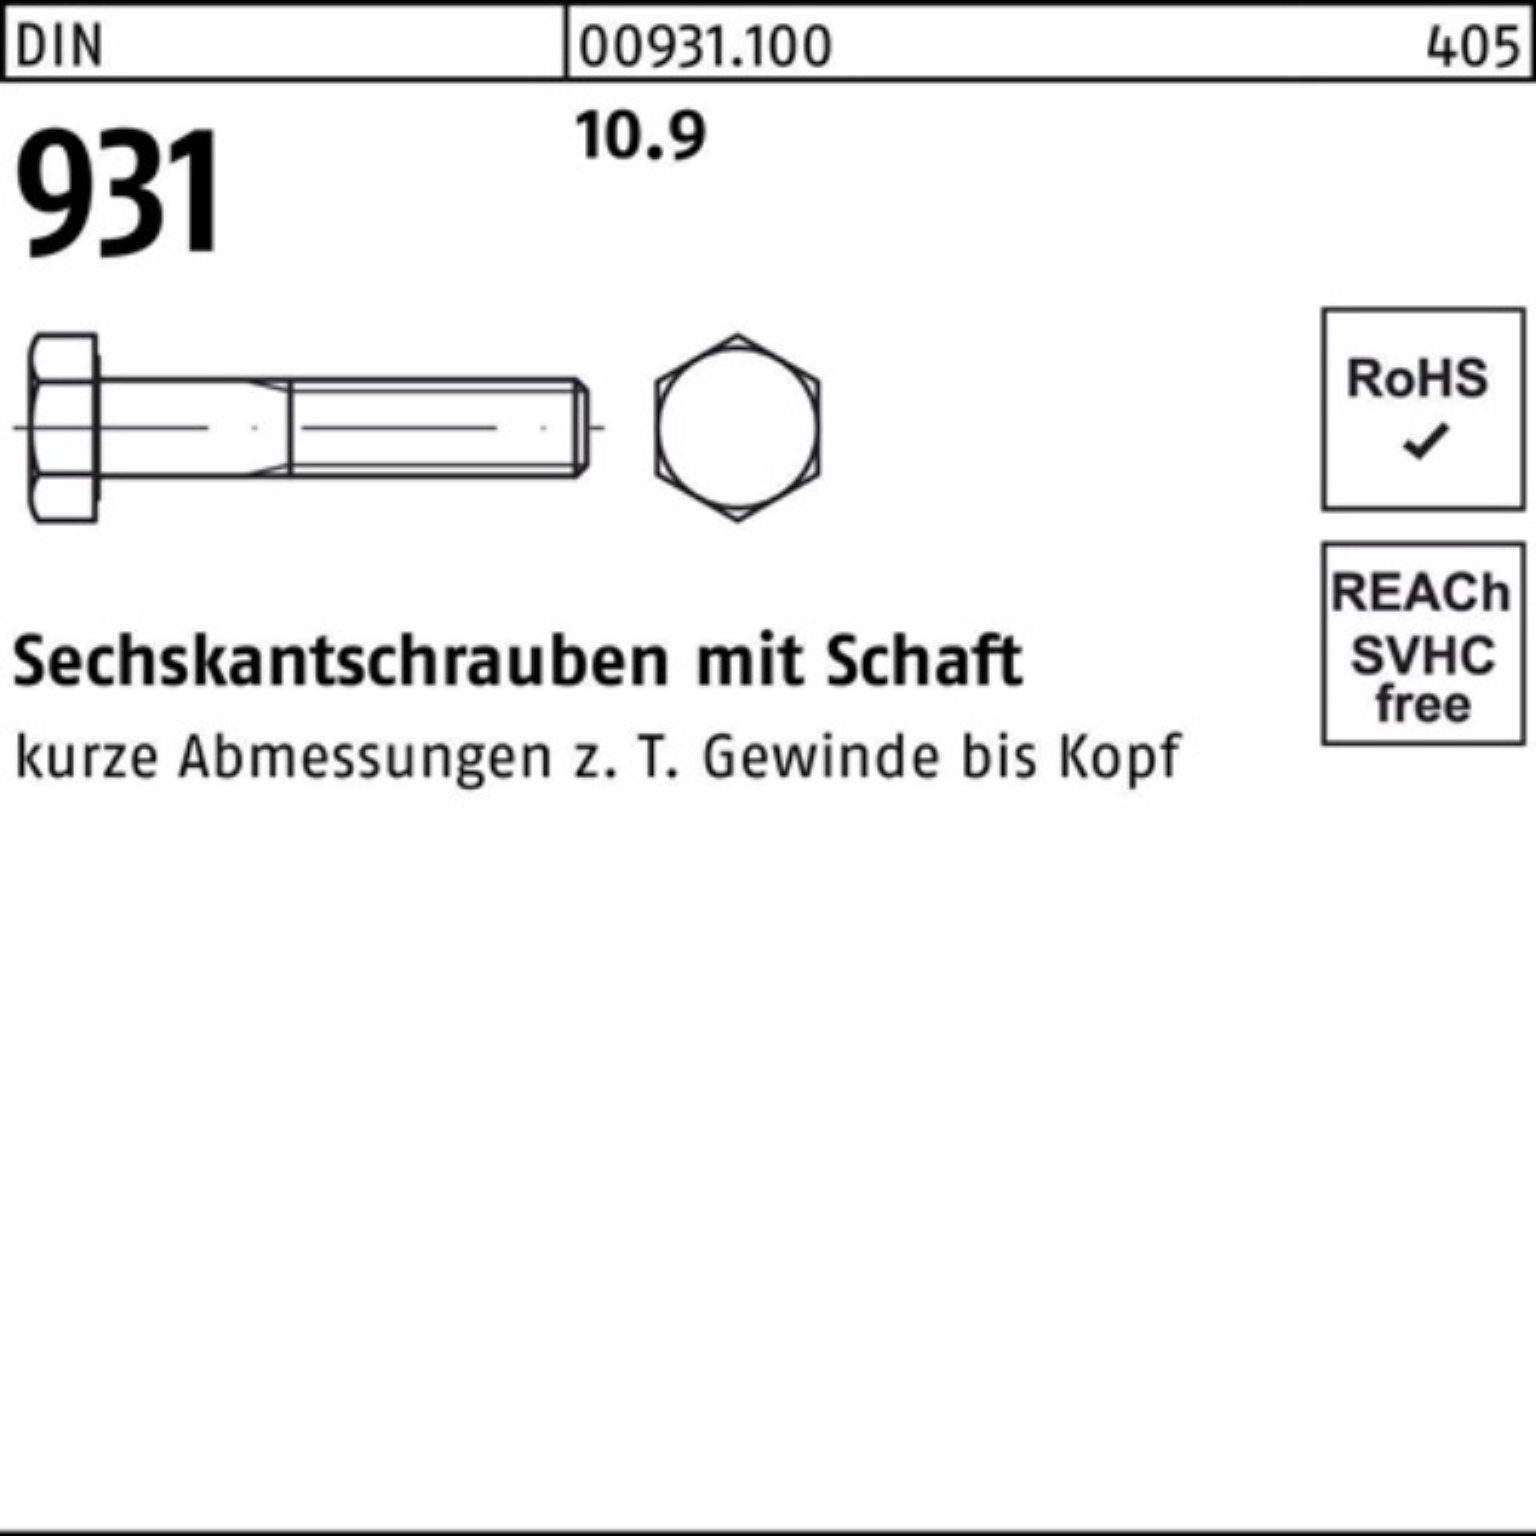 Sechskantschraube Reyher DIN 25 300 DI 931 10.9 100er Stück Sechskantschraube Pack Schaft M12x